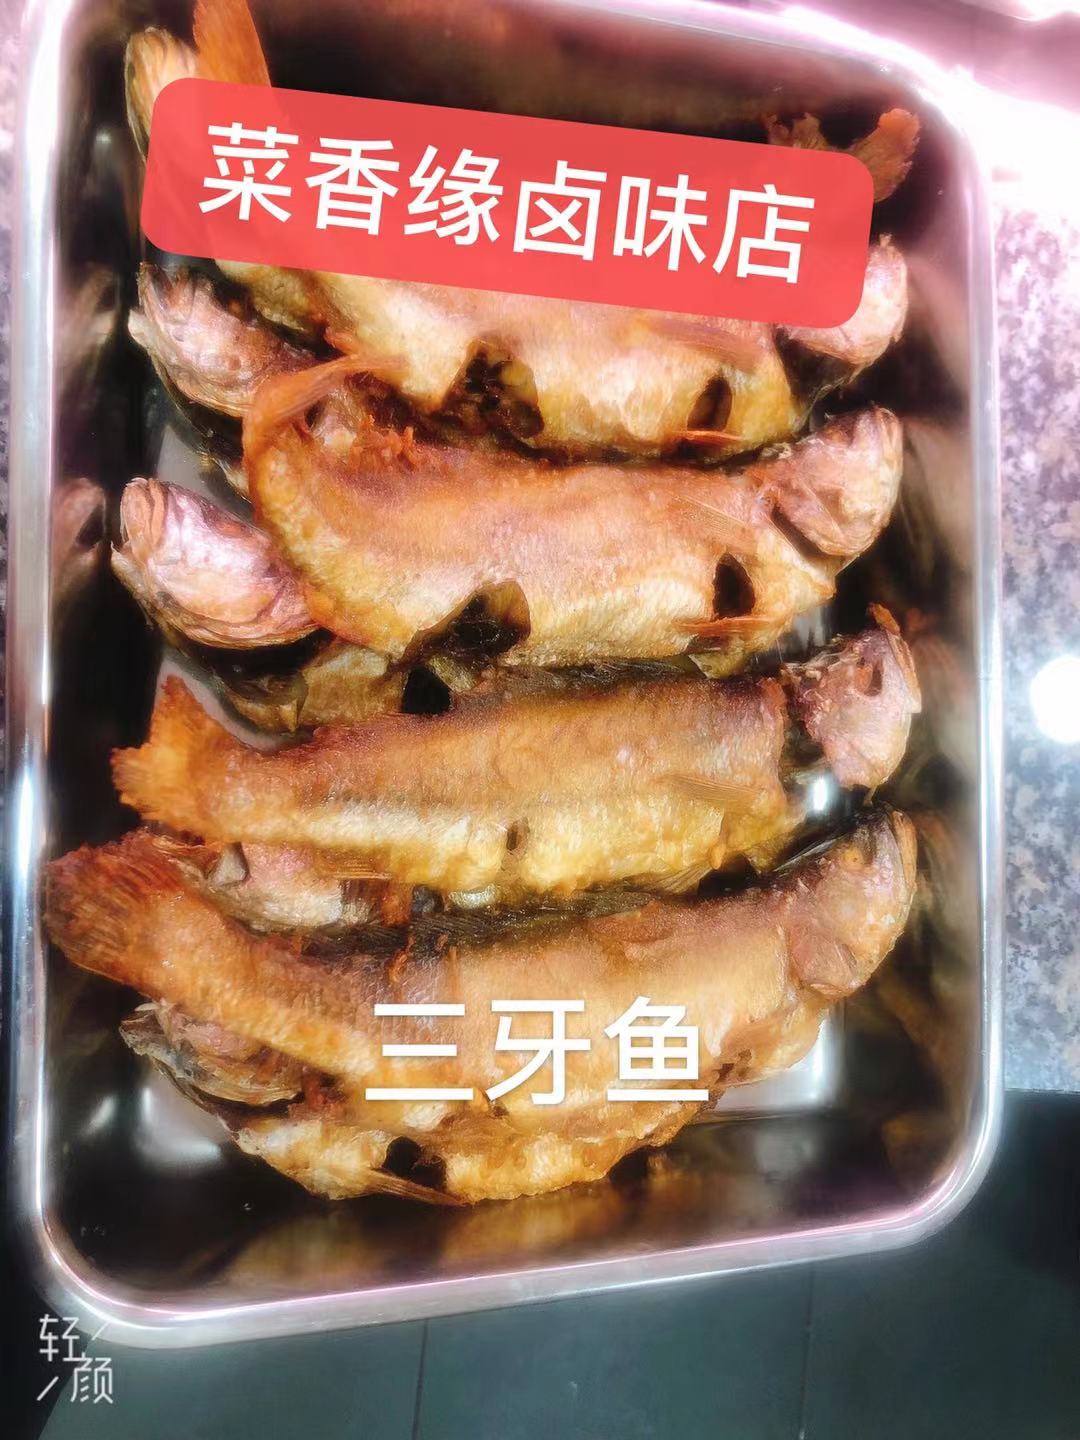 Poisson frit à trois dents/油炸三牙鱼/kg